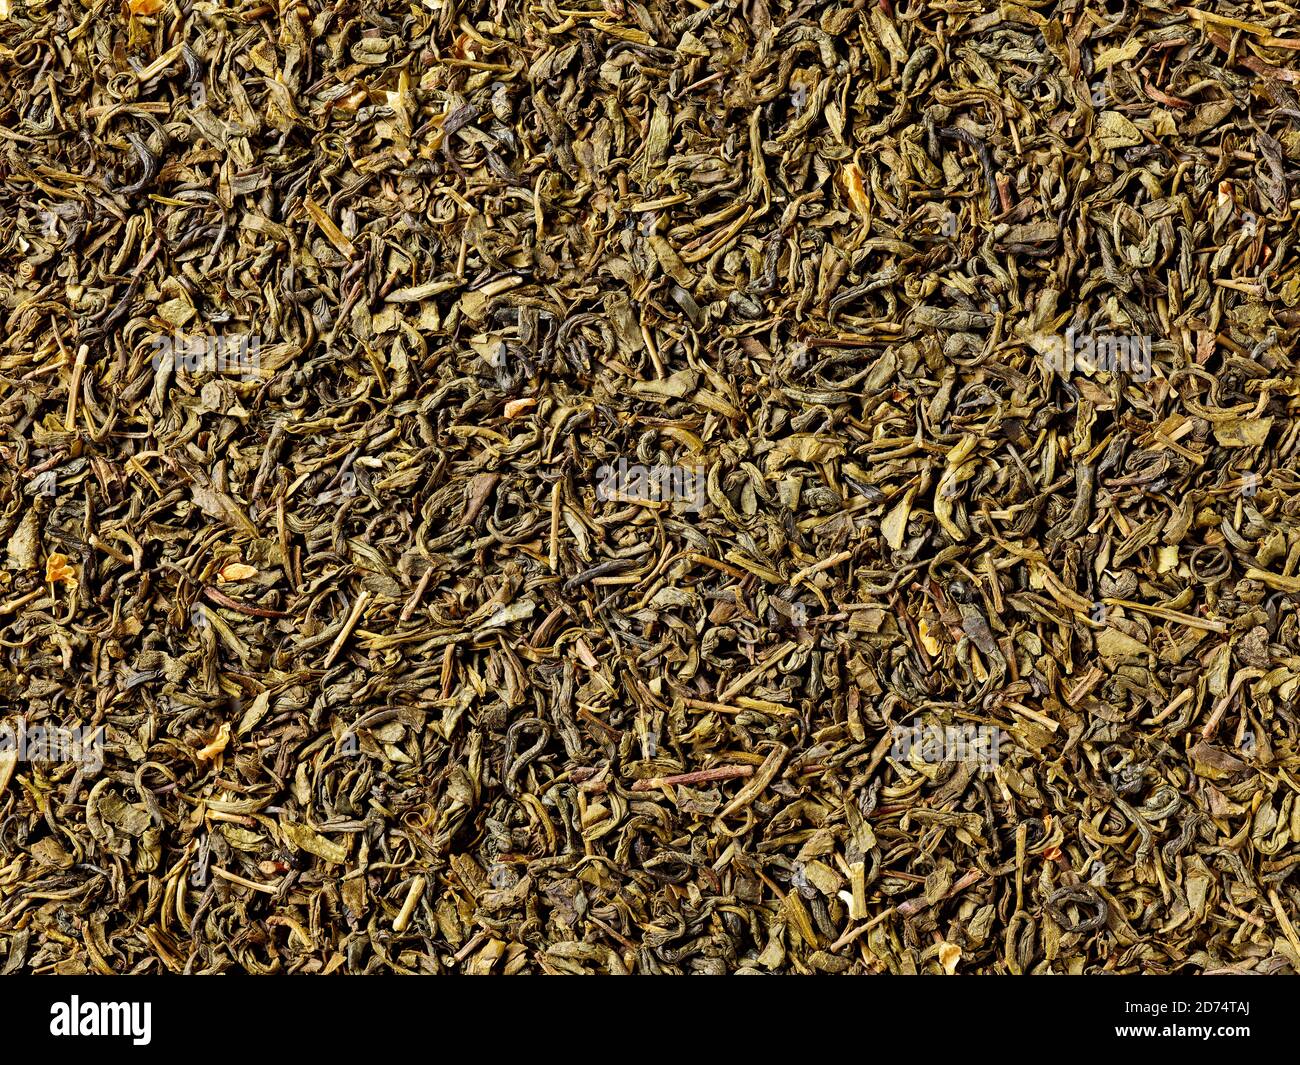 Fond de feuilles de thé vert jasmin séché, vue plate Banque D'Images